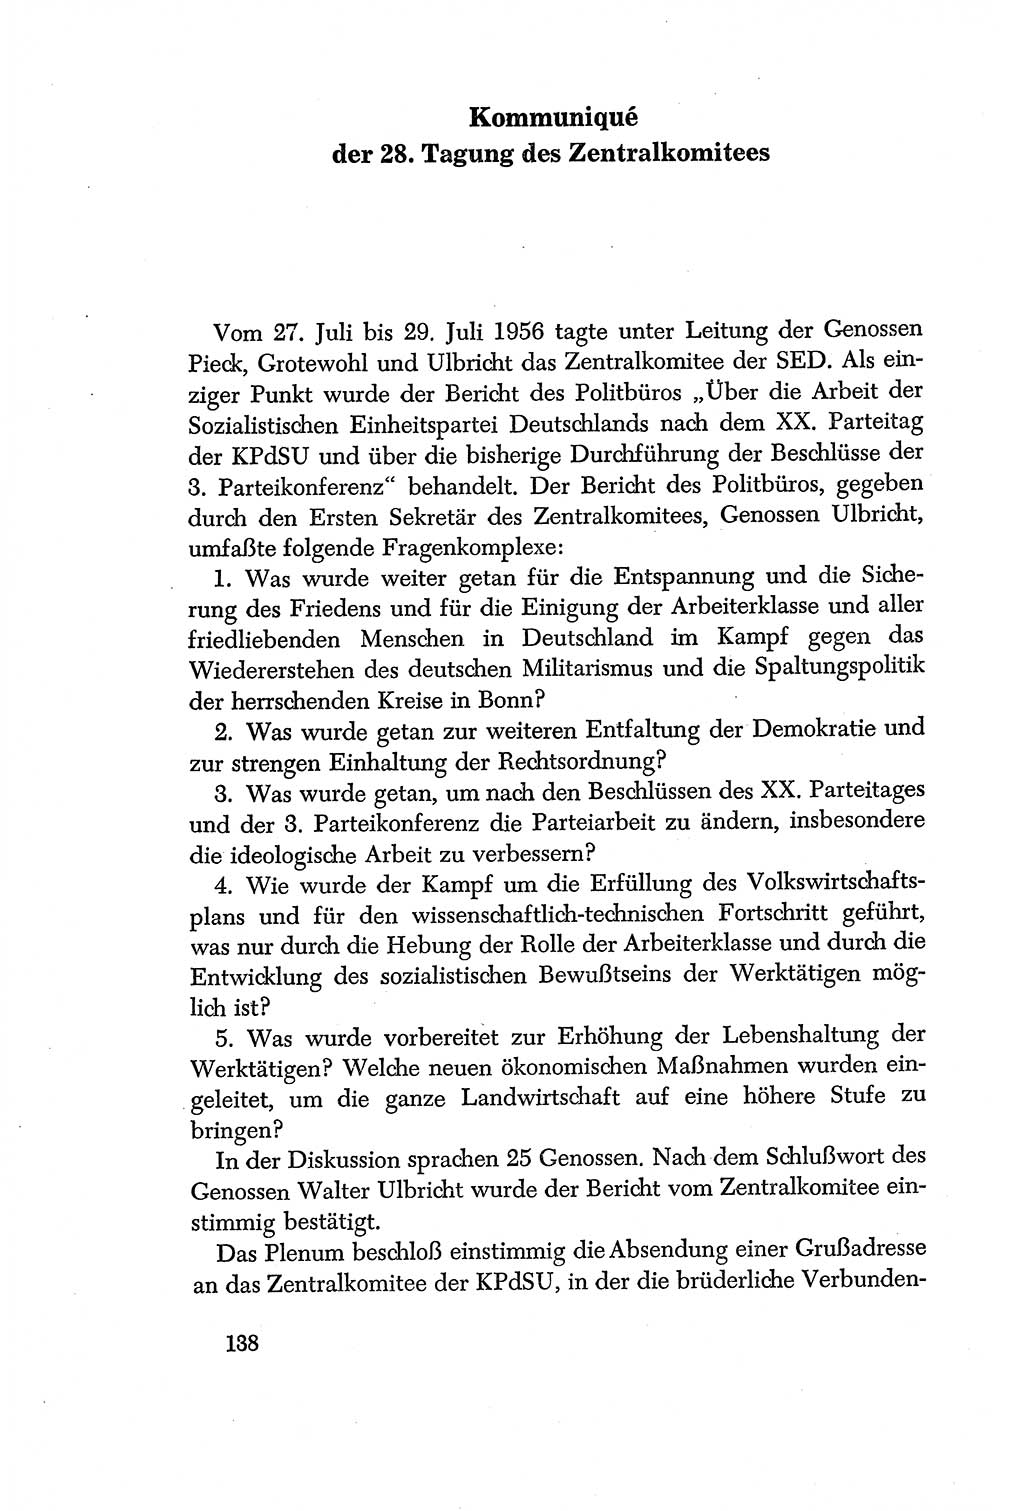 Dokumente der Sozialistischen Einheitspartei Deutschlands (SED) [Deutsche Demokratische Republik (DDR)] 1956-1957, Seite 138 (Dok. SED DDR 1956-1957, S. 138)